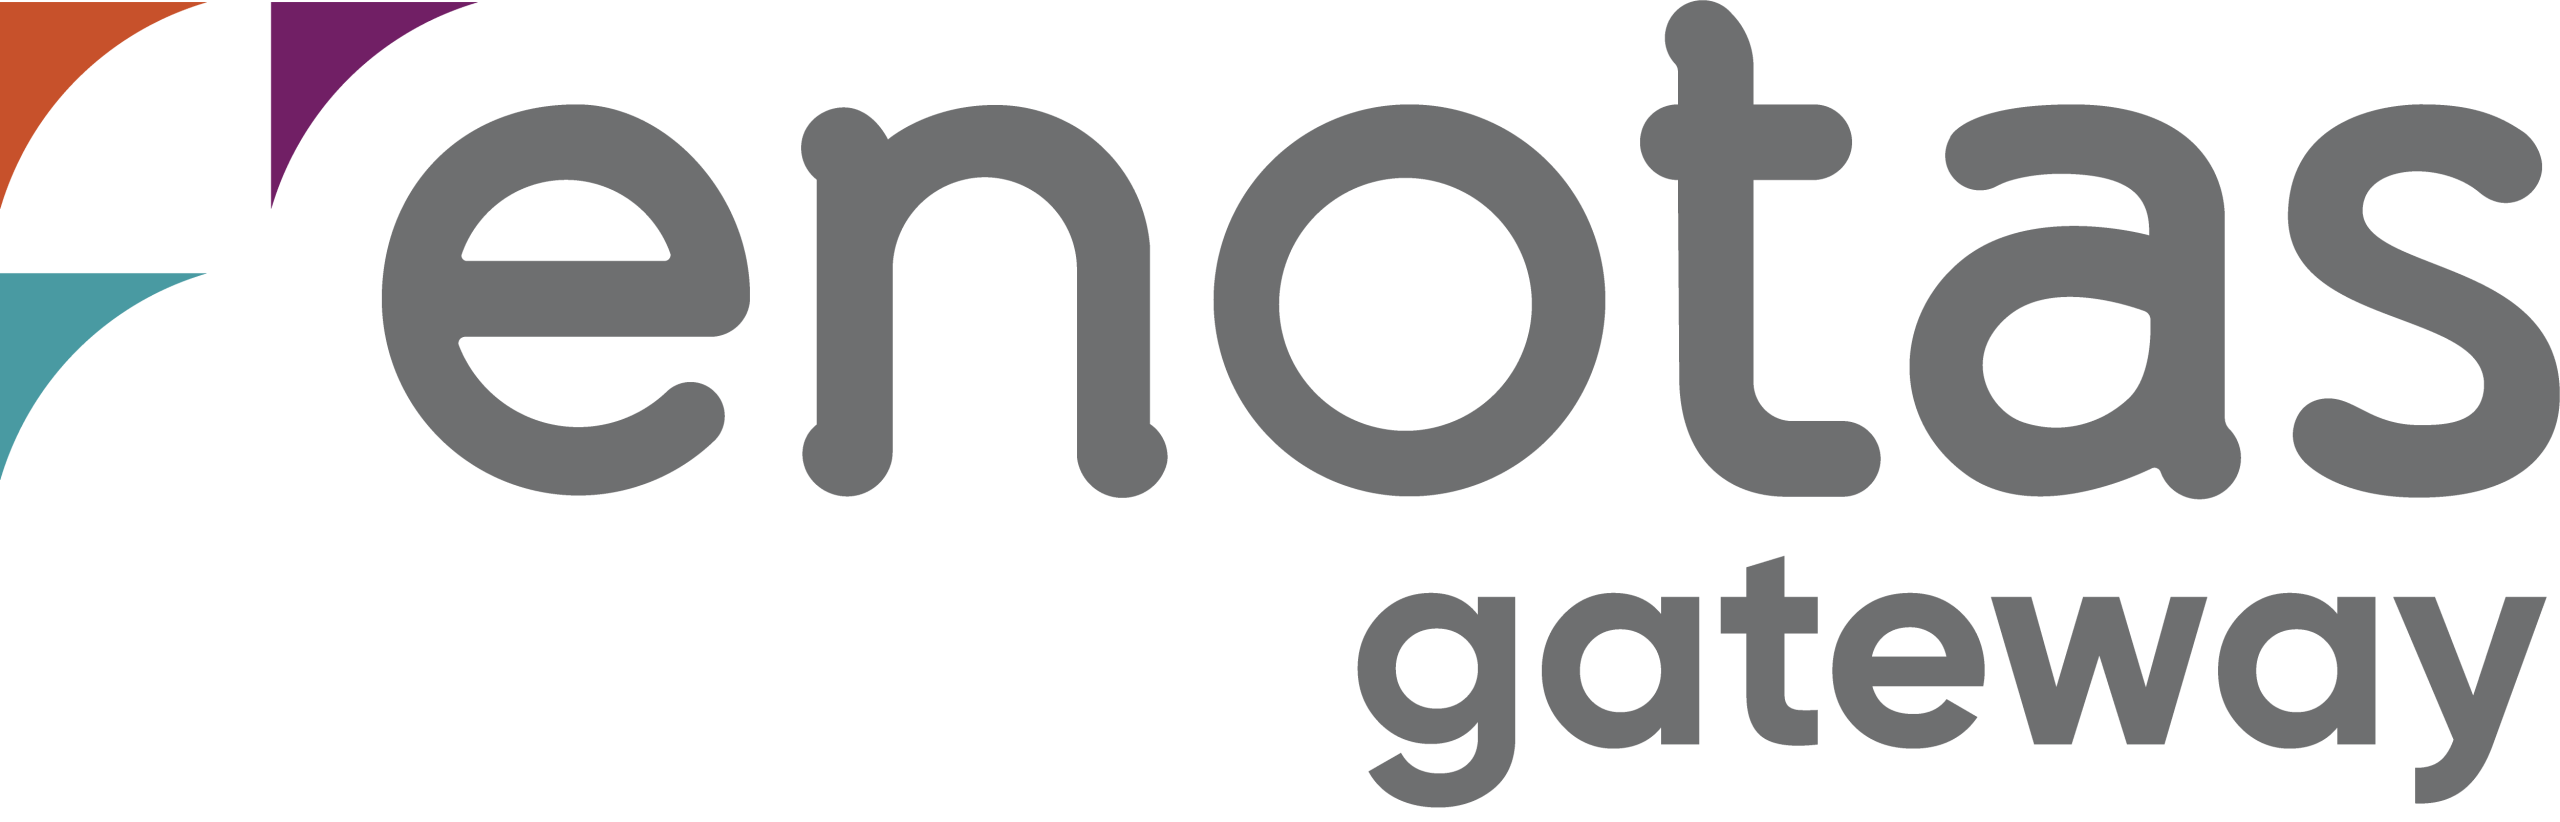 logo-enotas-gateway